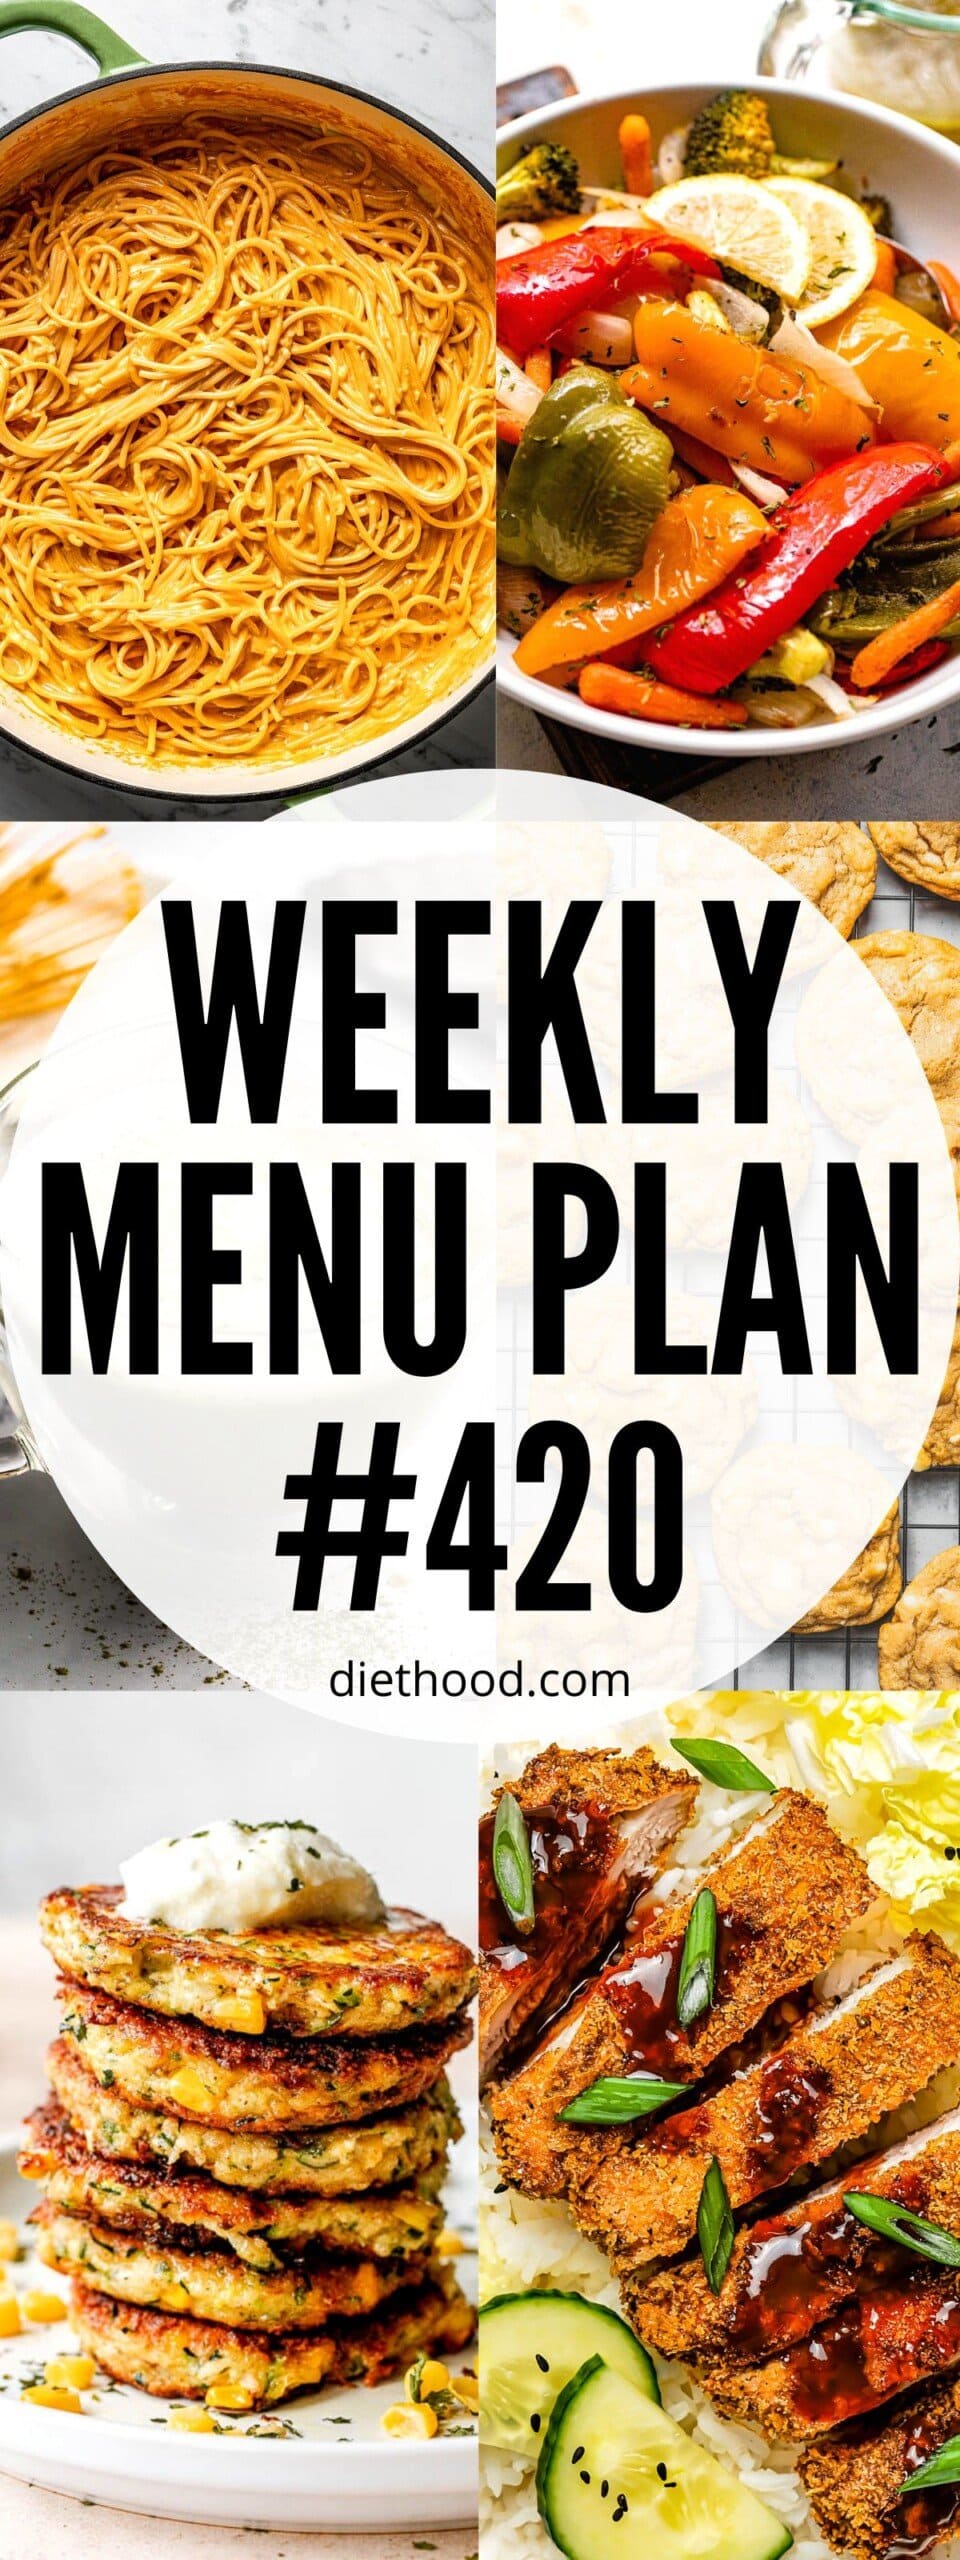 WEEKLY MENU PLAN #420 – Diethood